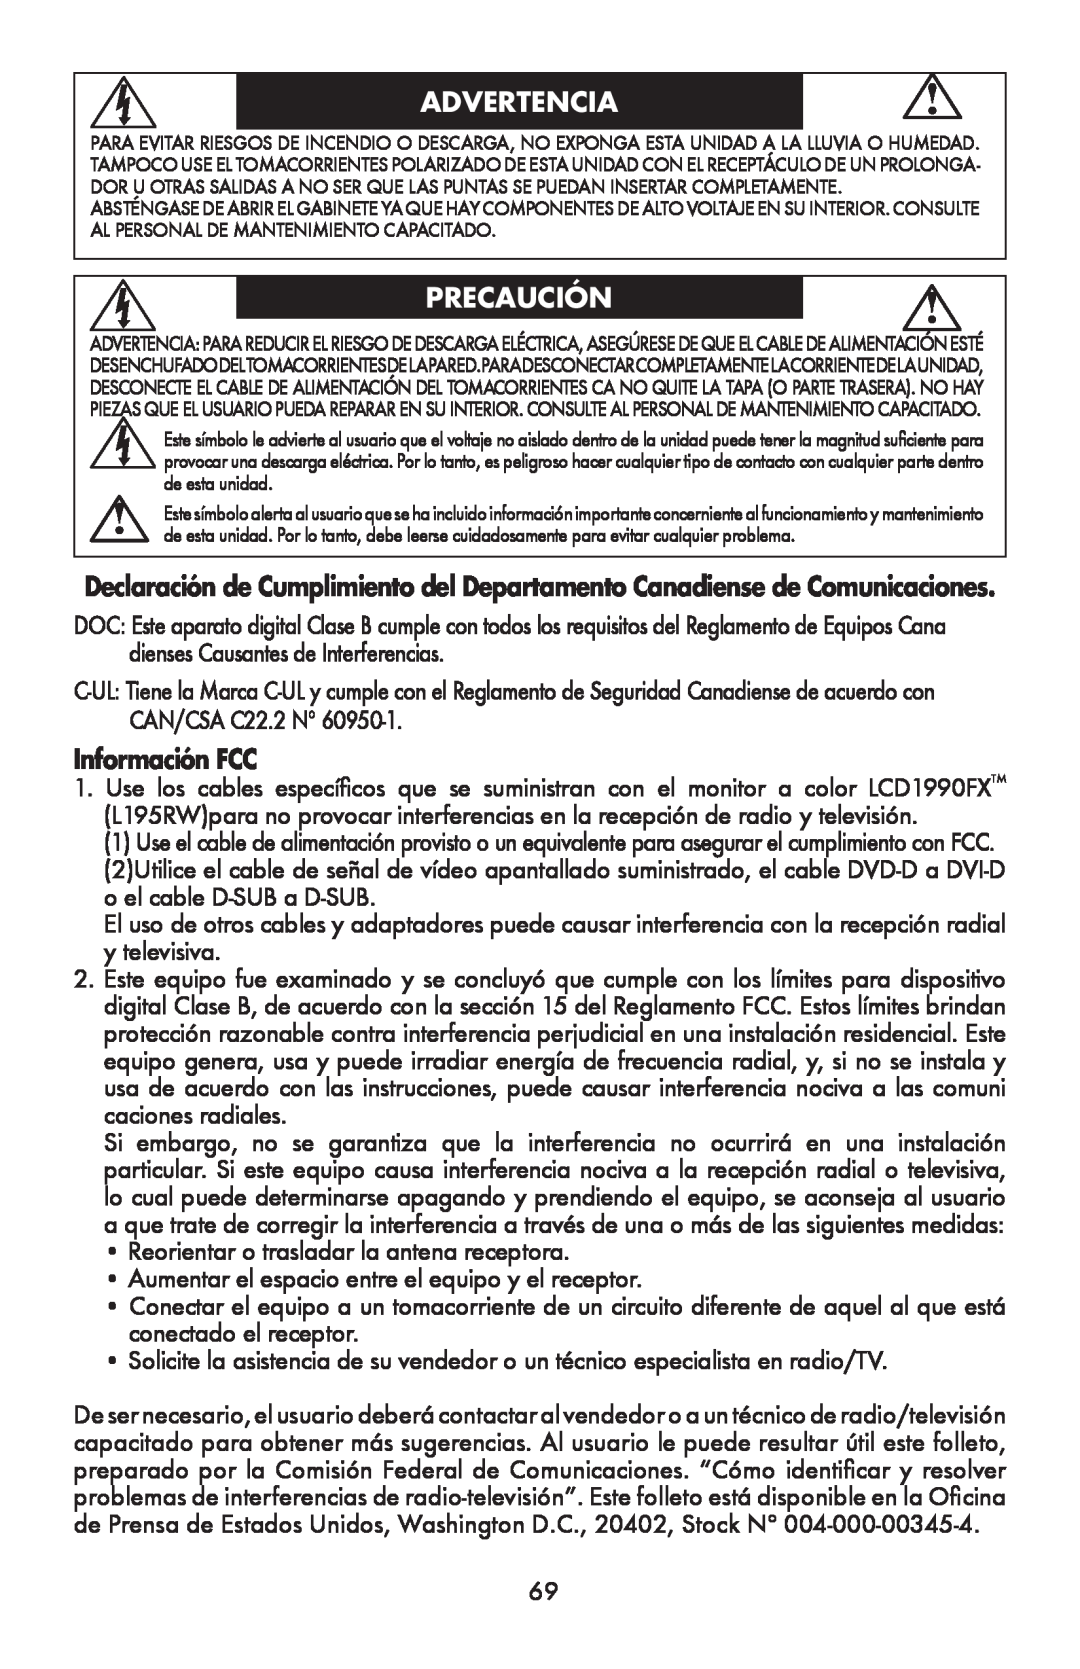 NEC LCD1990FXTM user manual Advertencia, Precaución, Información FCC 